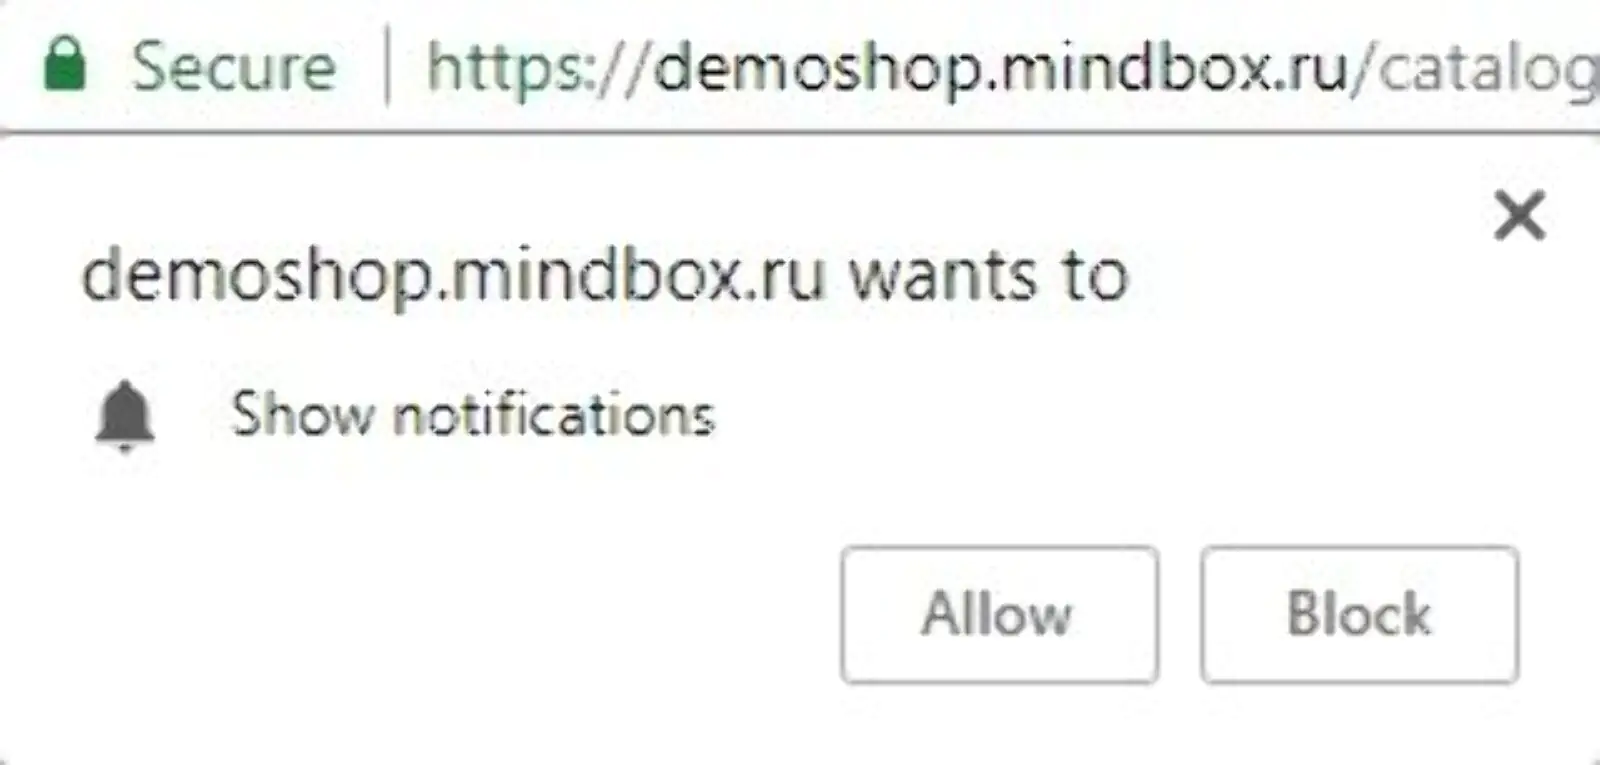 Семен не получит вебпуши от demoshop.mindbox.ru, если нажмет “Block”